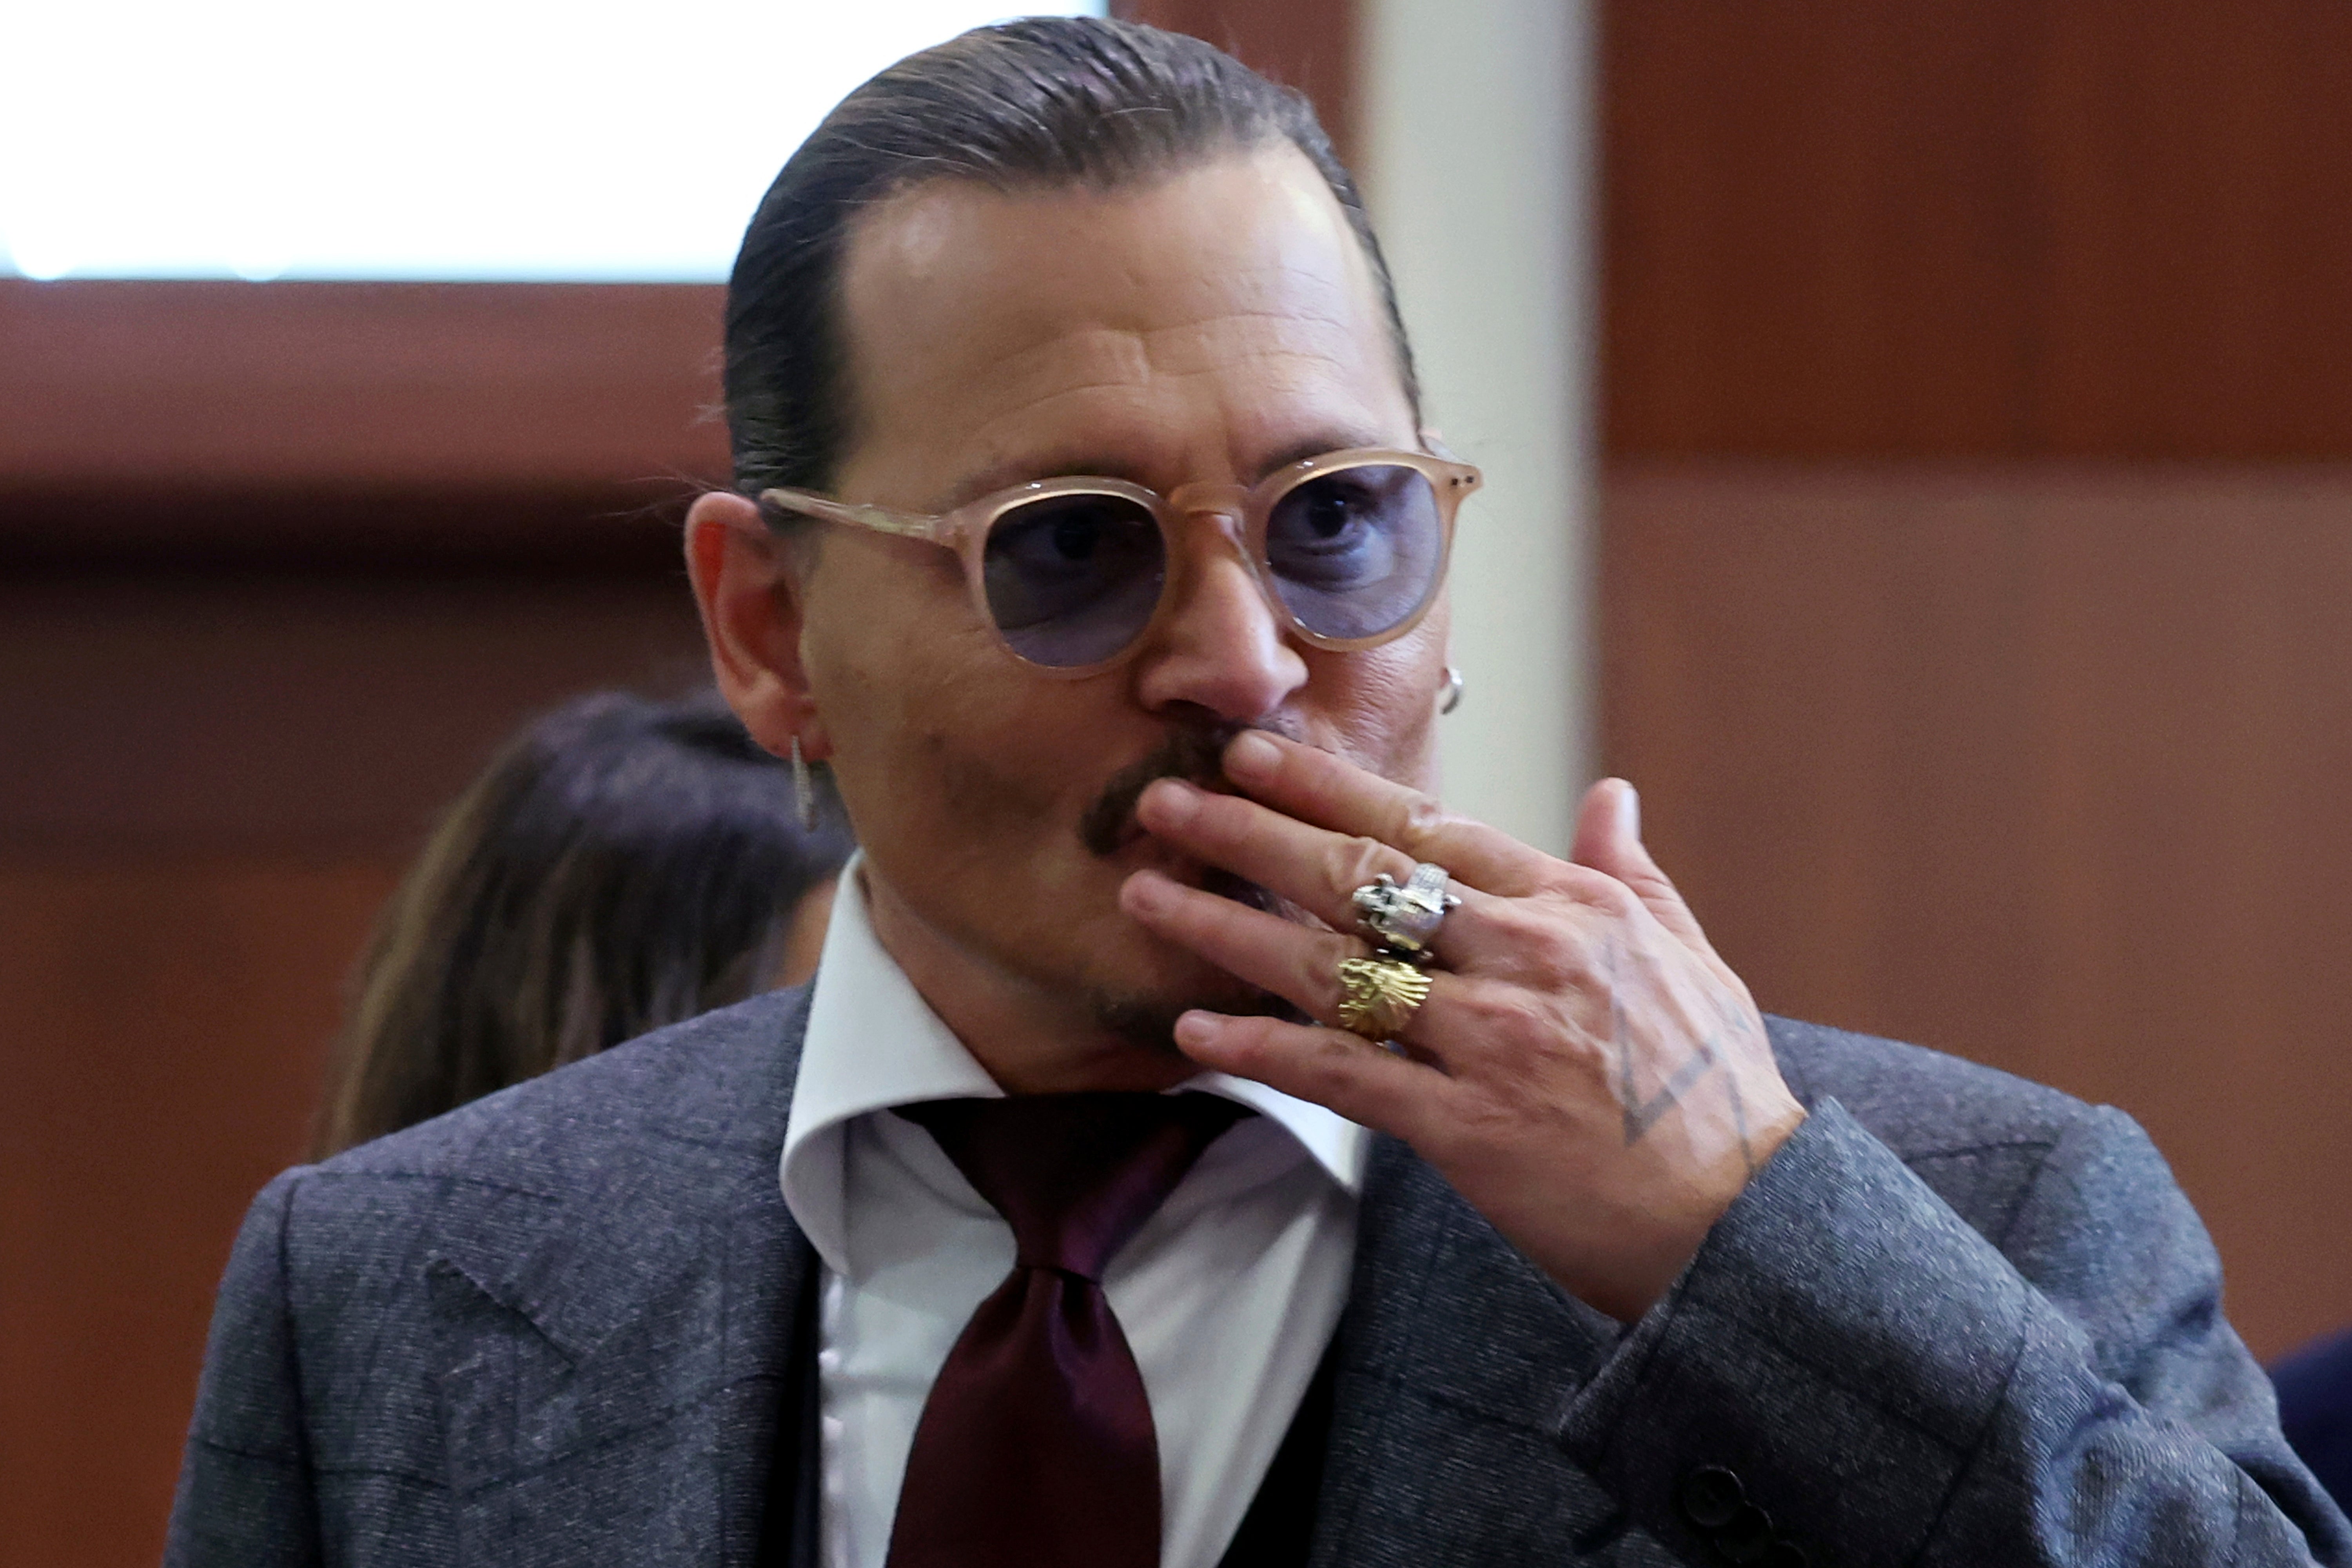 El actor Johnny Depp reacciona ante los fans en la sala del tribunal el jueves